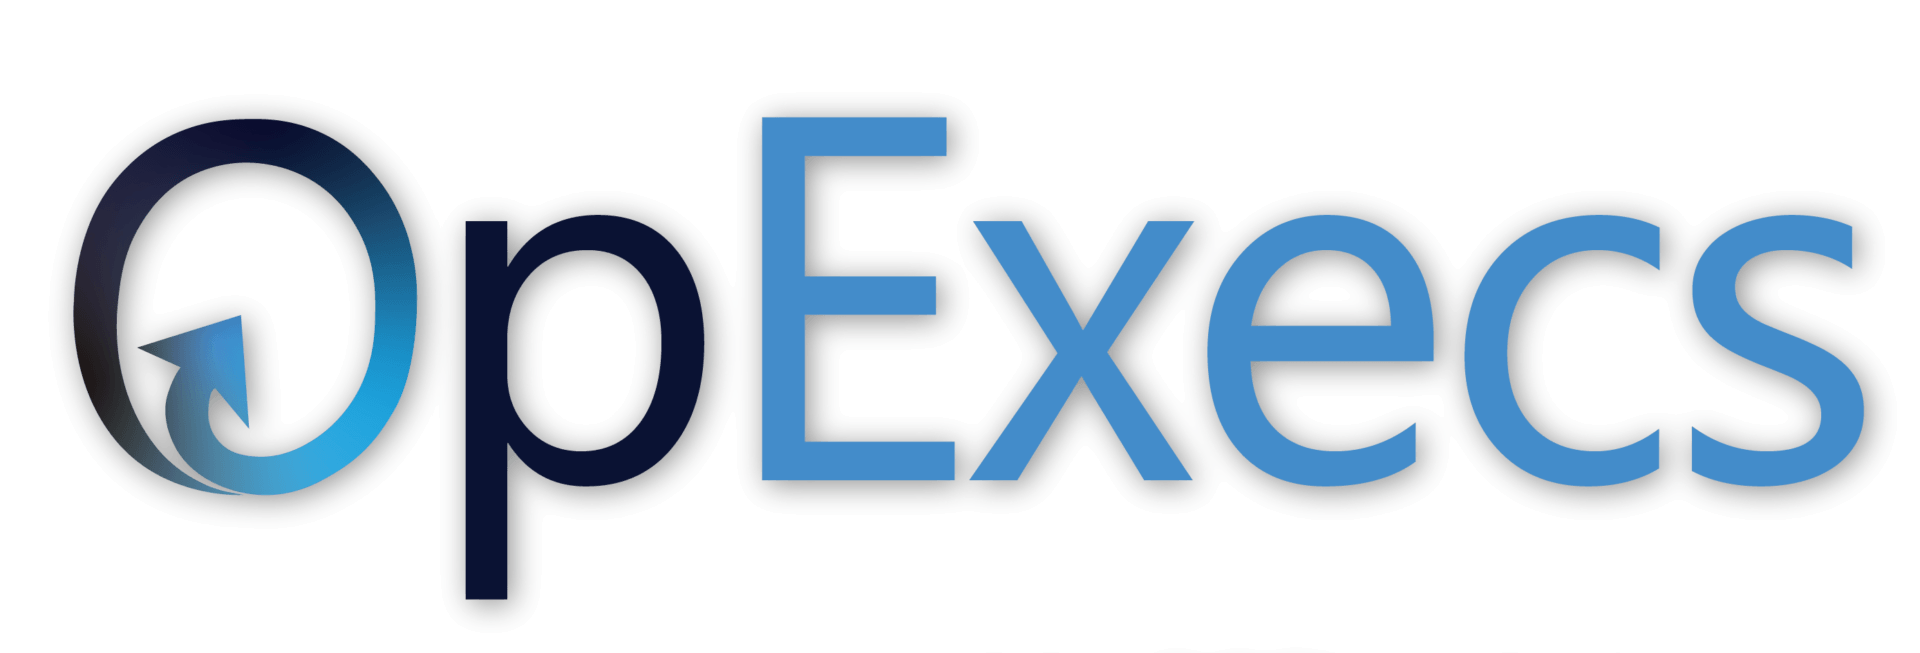 OpExecs-Logo-no-tagline (1)